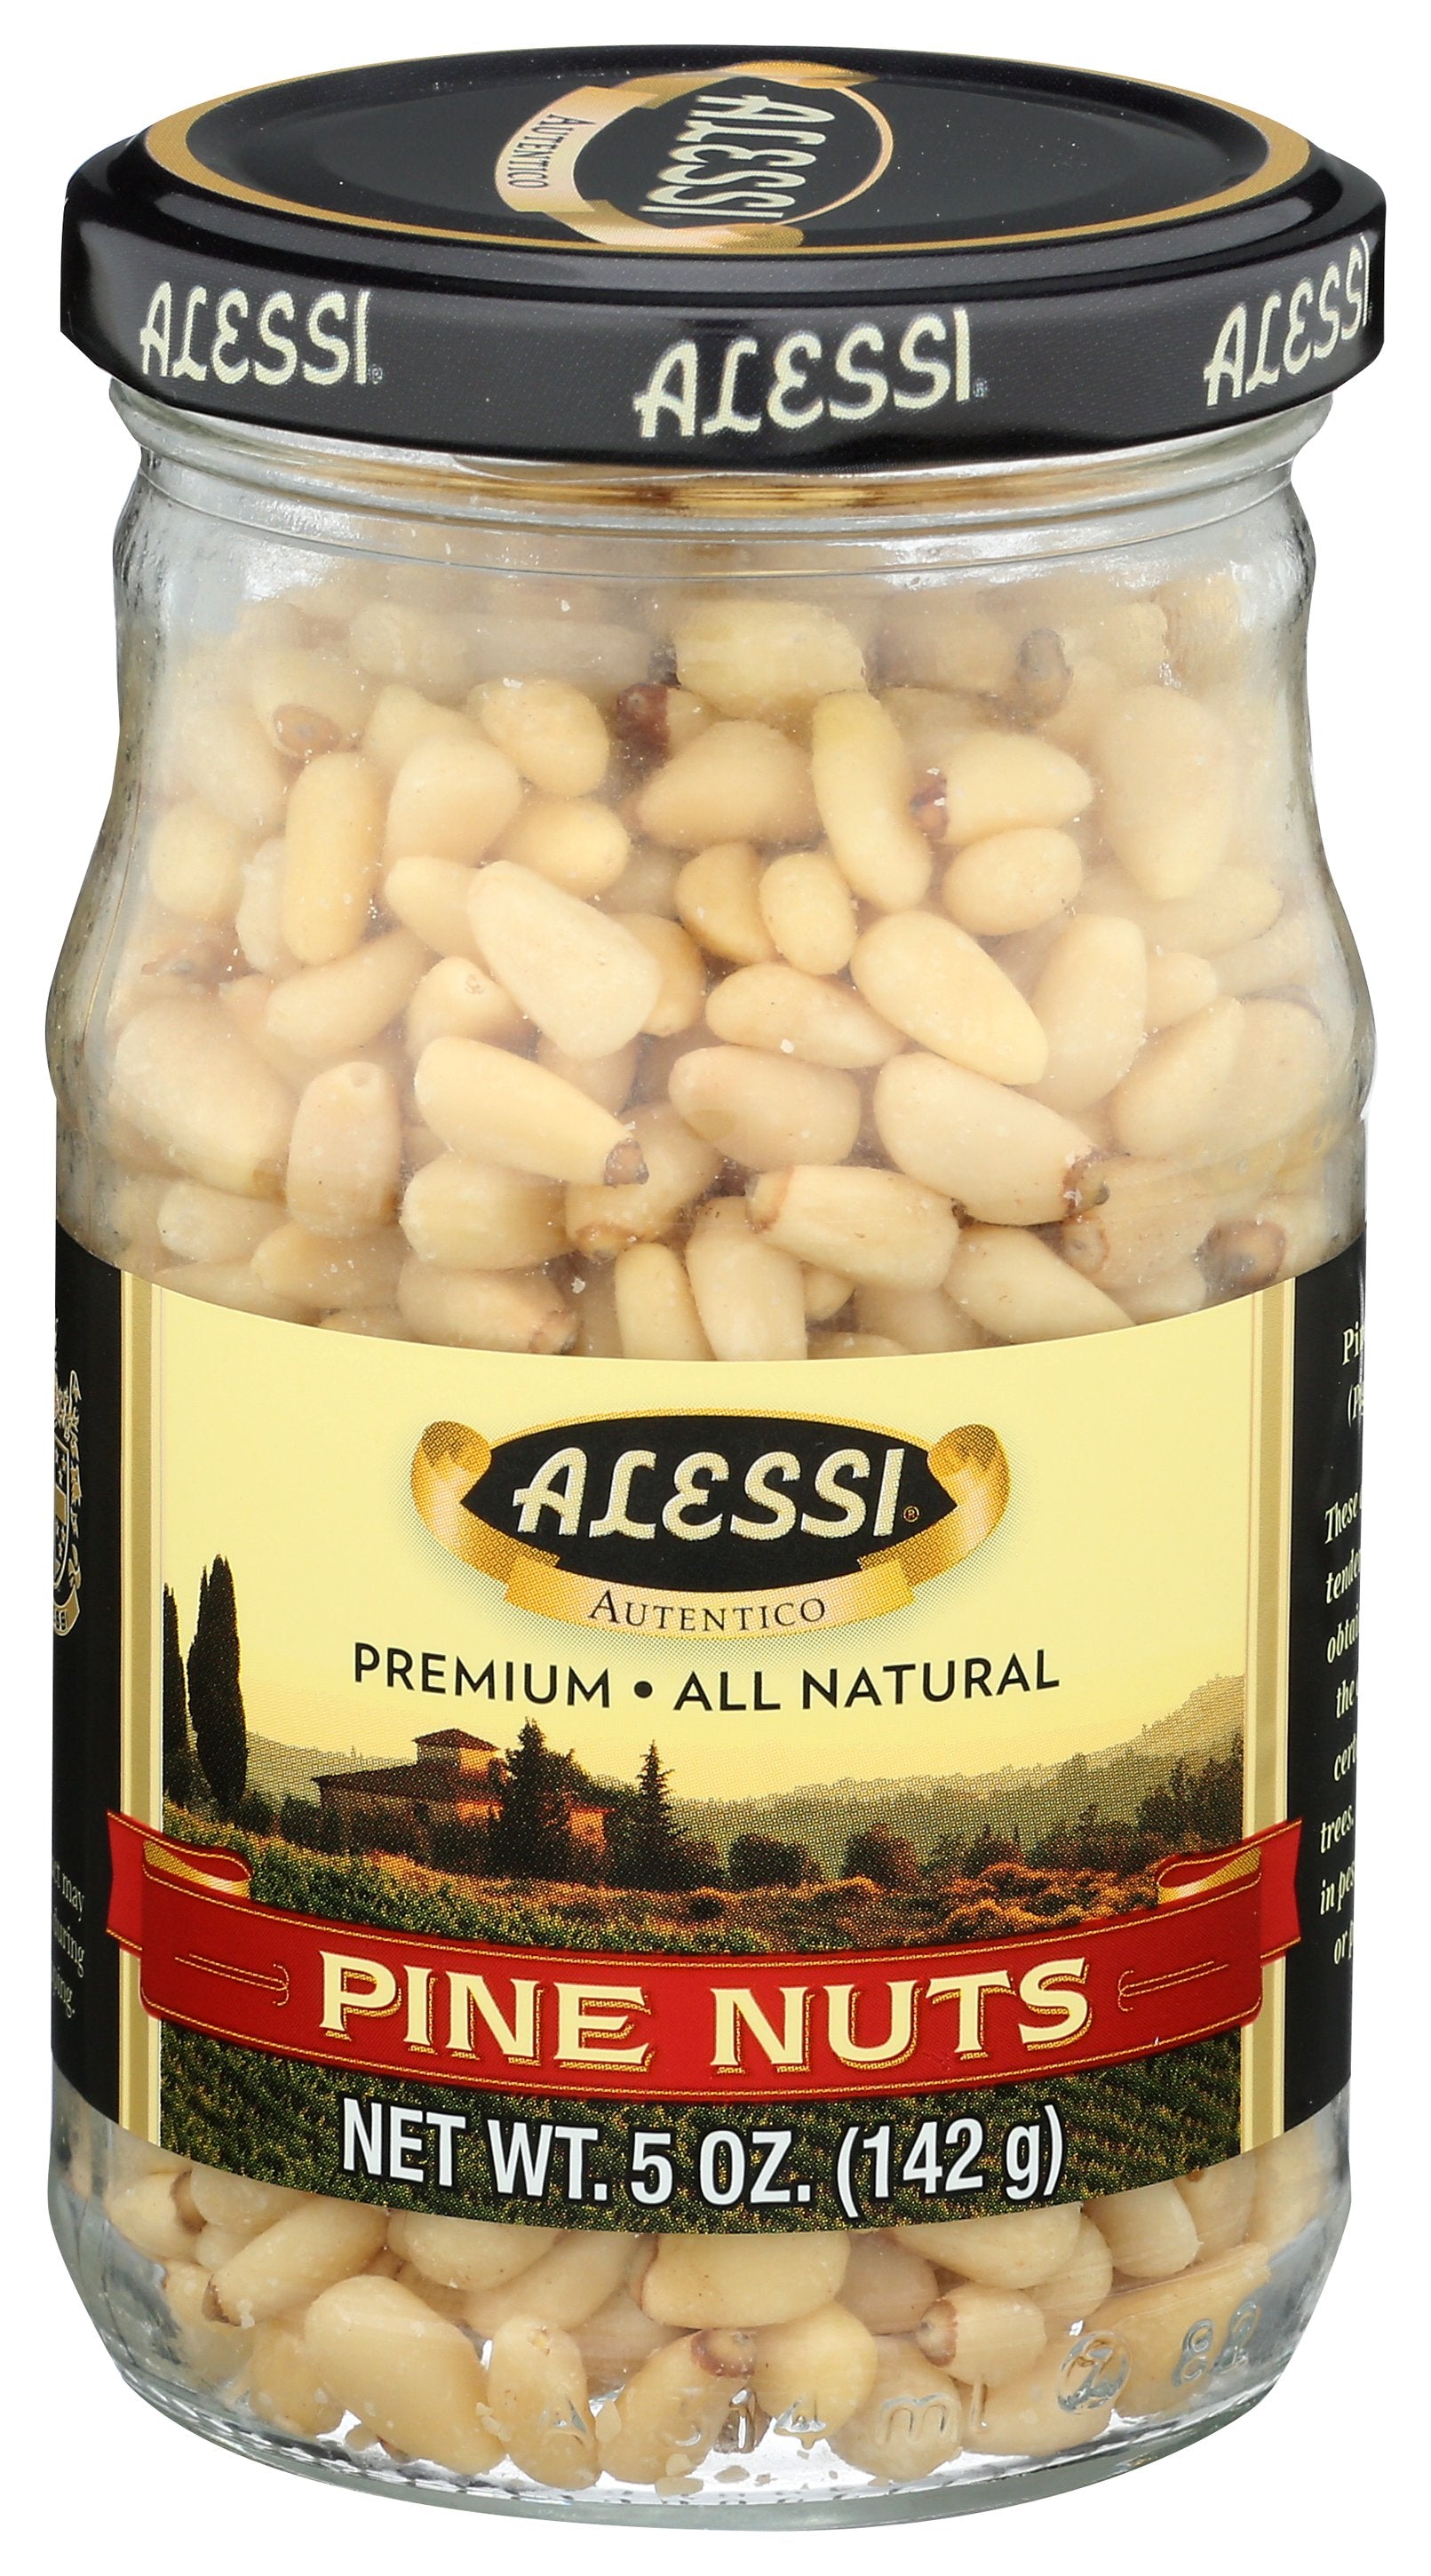 ALESSI NUTS PINE - Case of 12 [NUT PIGNOLI - 5 OZ]